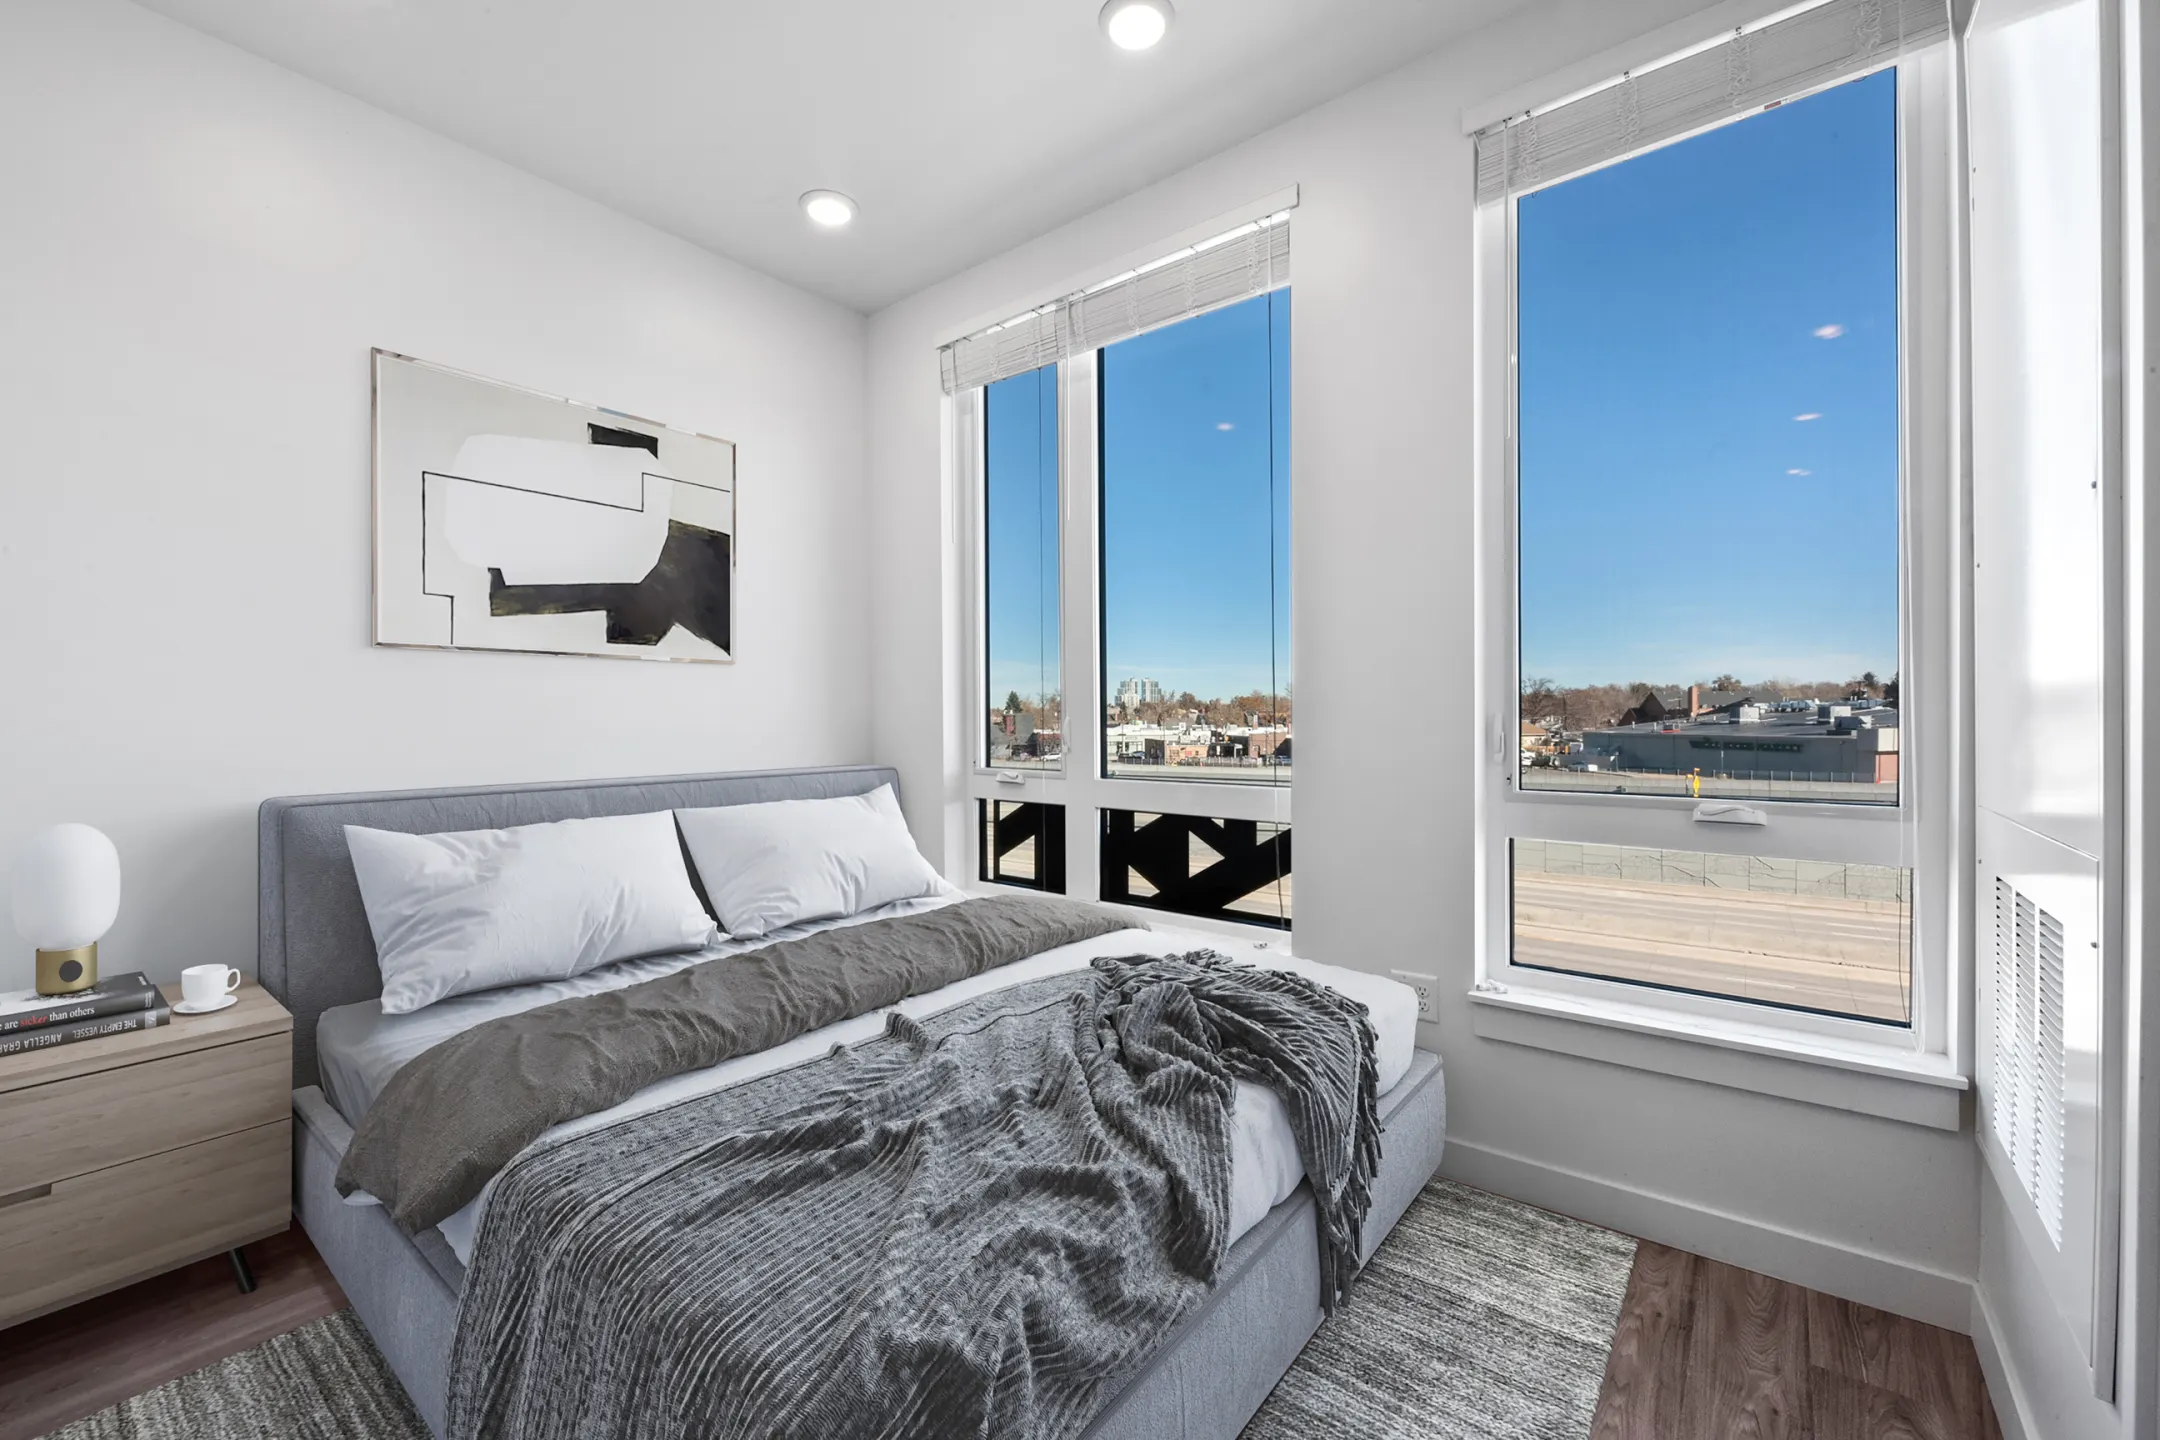 Bedroom - Carraway Apartments - Denver, CO